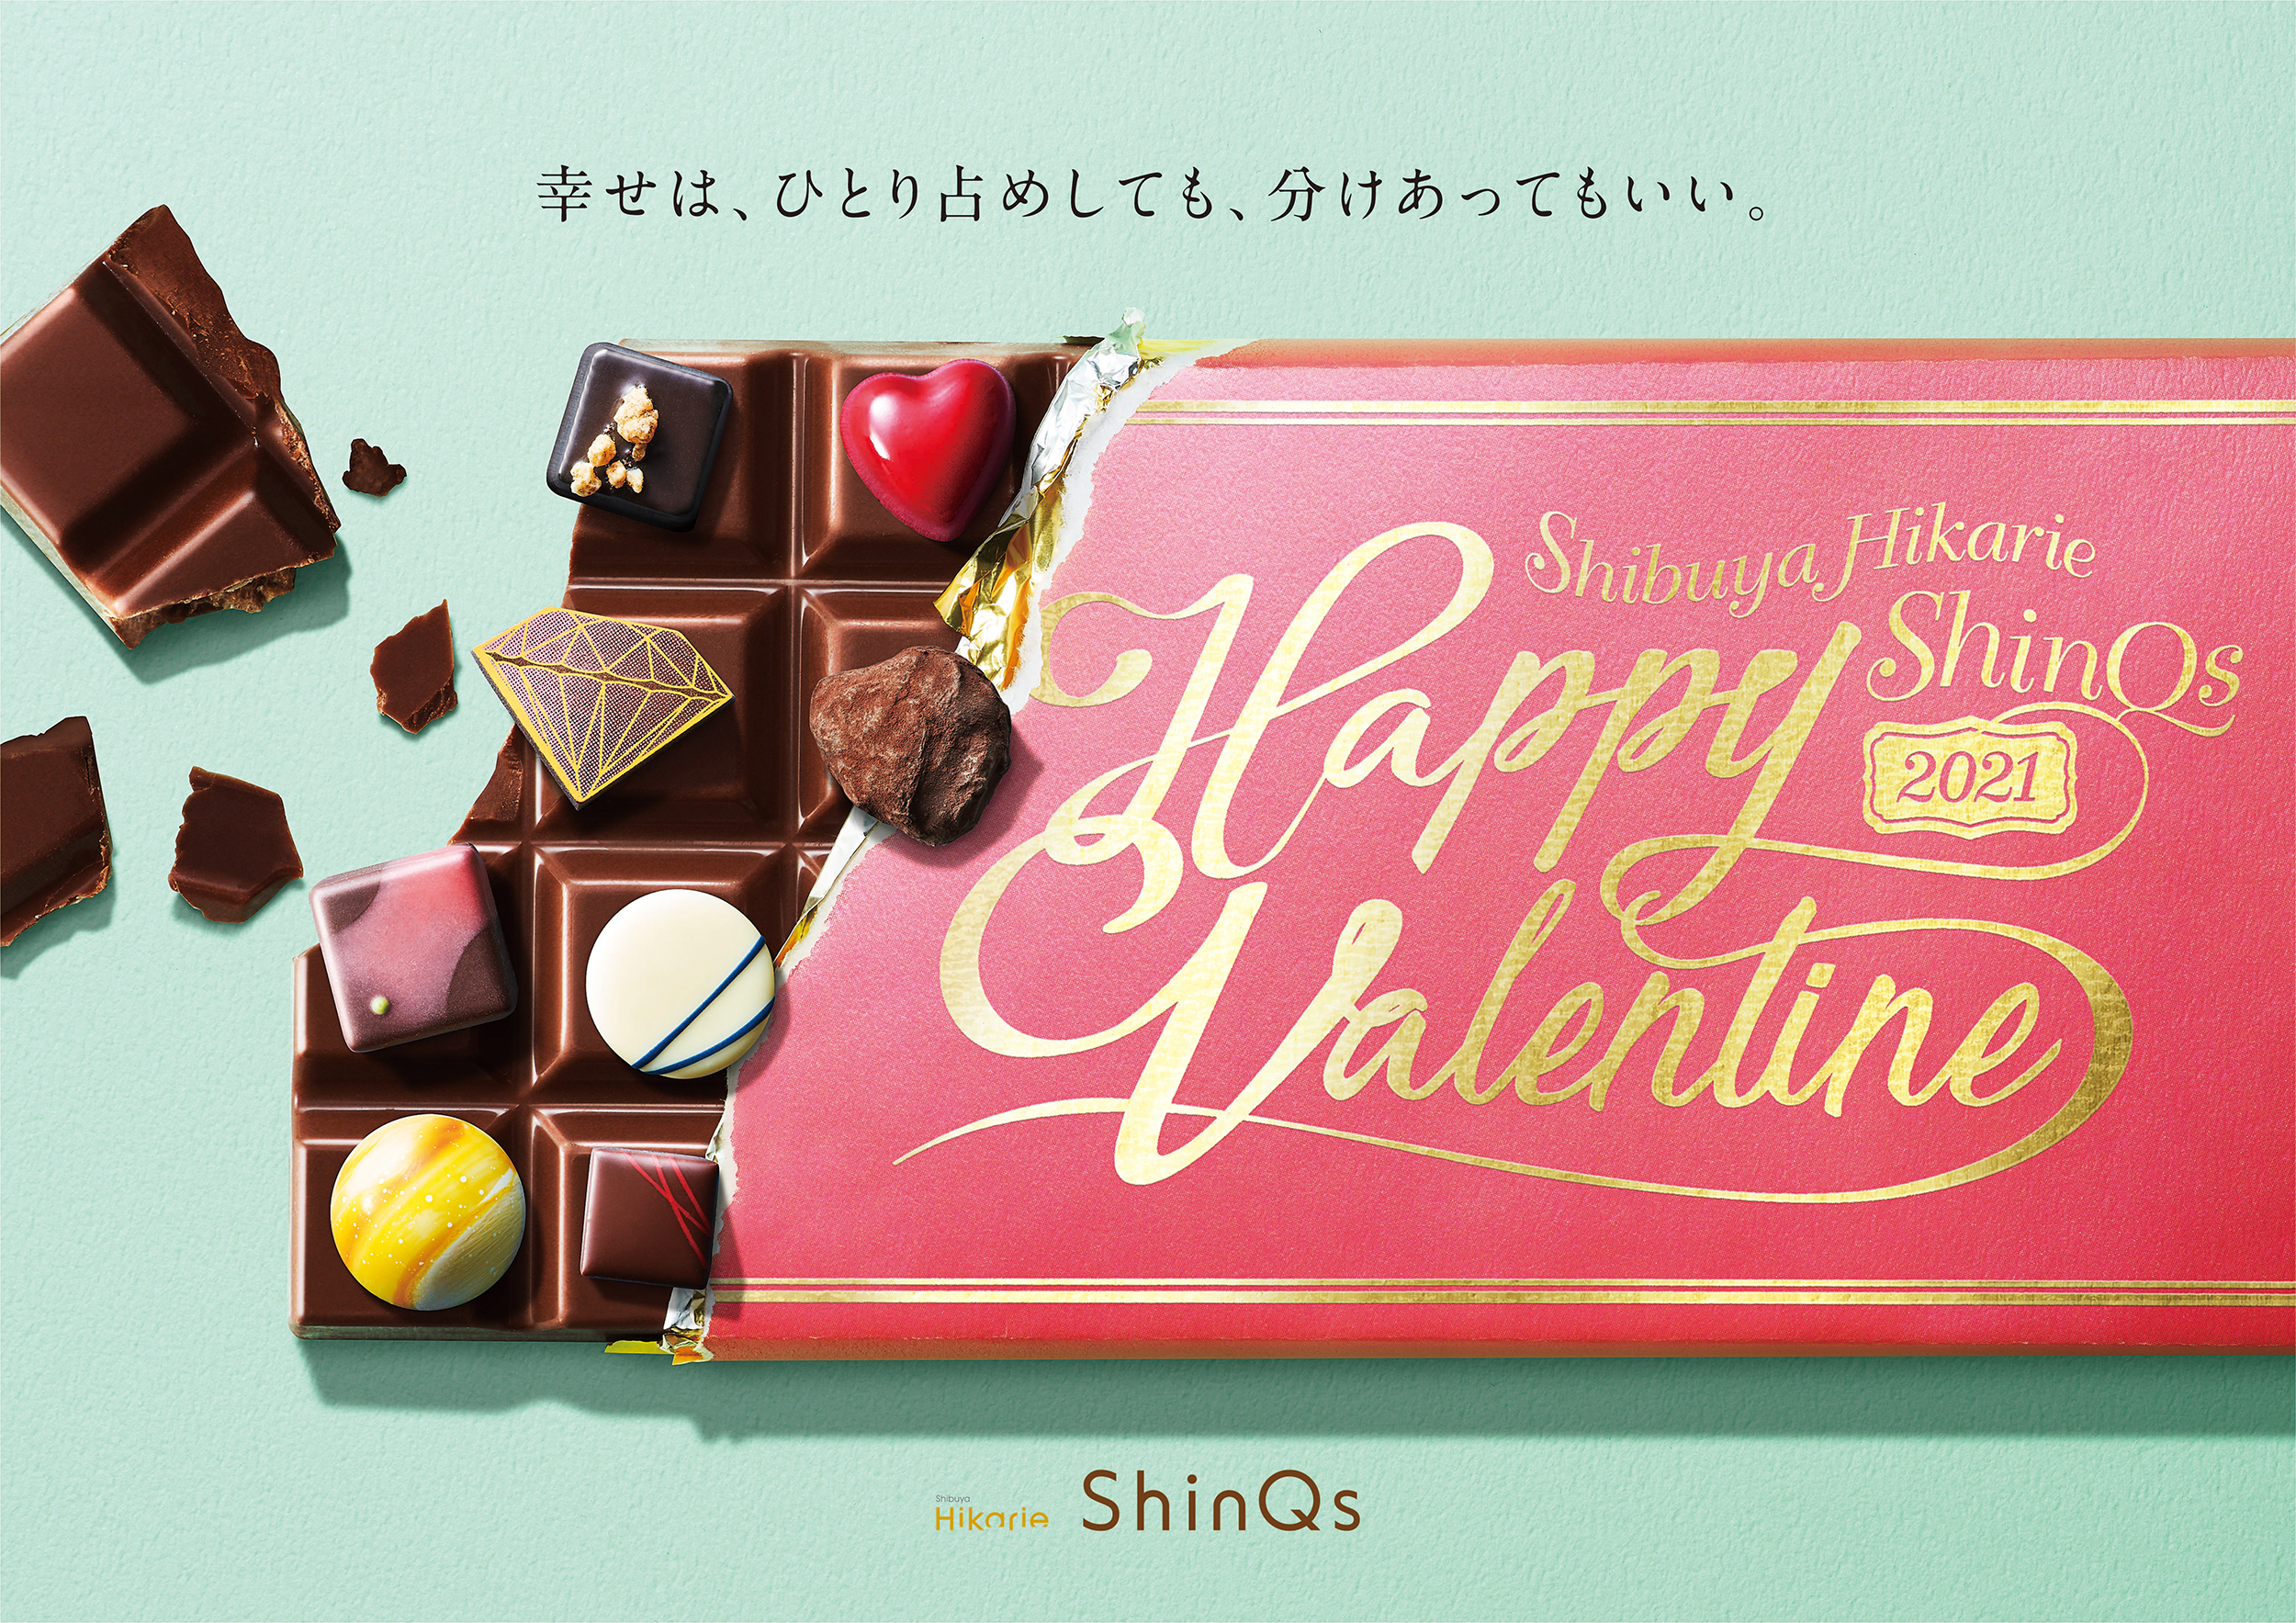 Shibuya Hikarie ShinQs Valentine